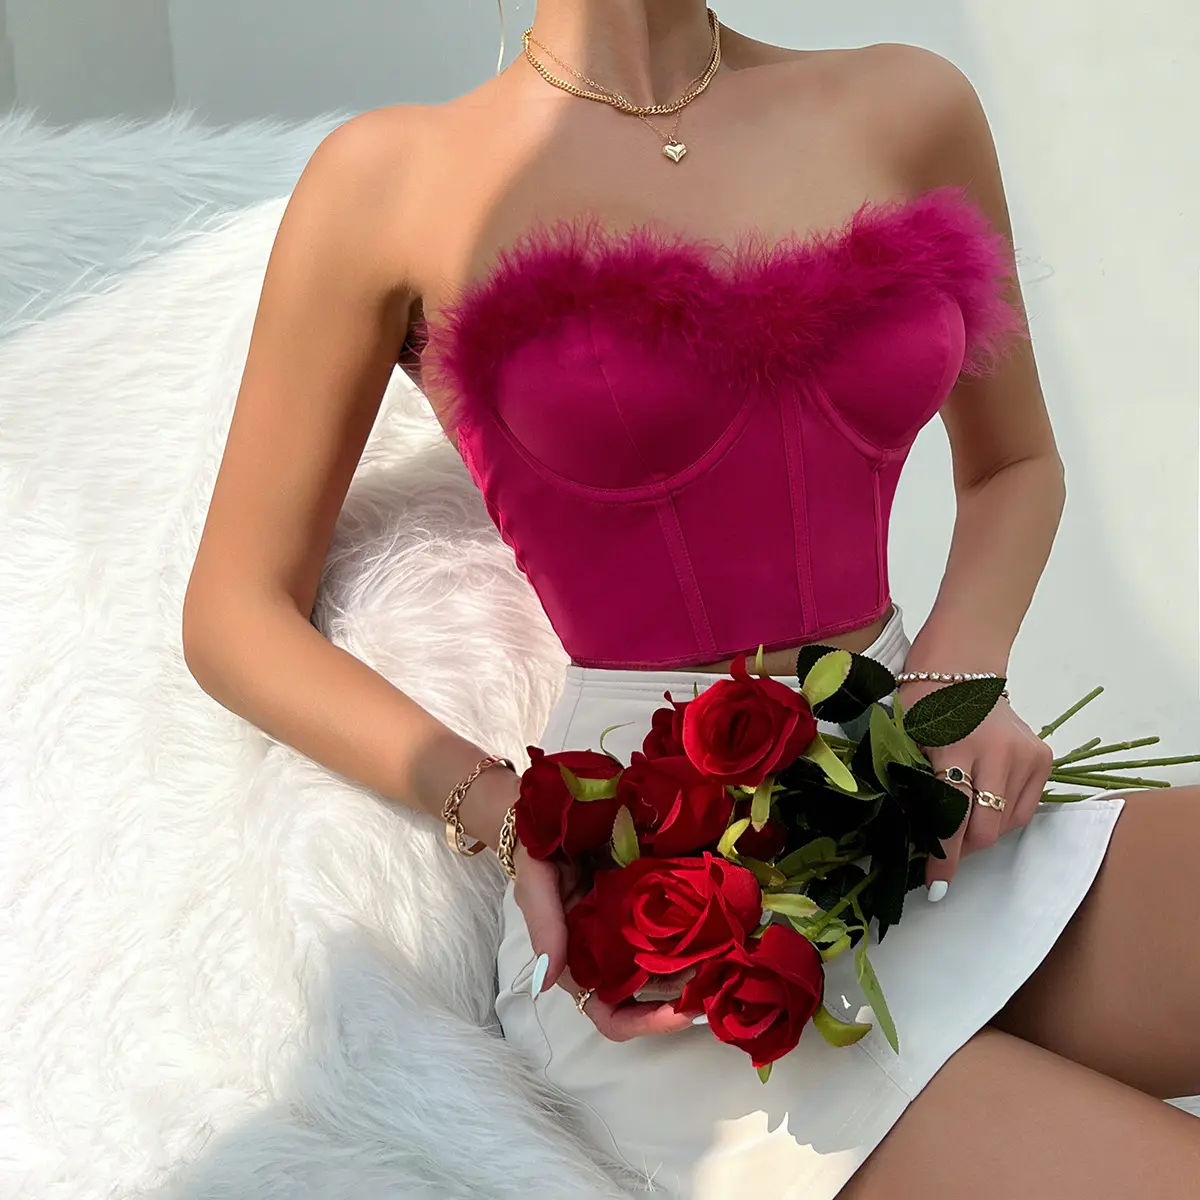 गर्मियों की महिलाओं के कपड़े लाइट रोसी फर फ्फ्फी ओस्ट्रिक फेदर ब्रा शीर्ष महिला बुसियर्स कॉर्सेट टॉप